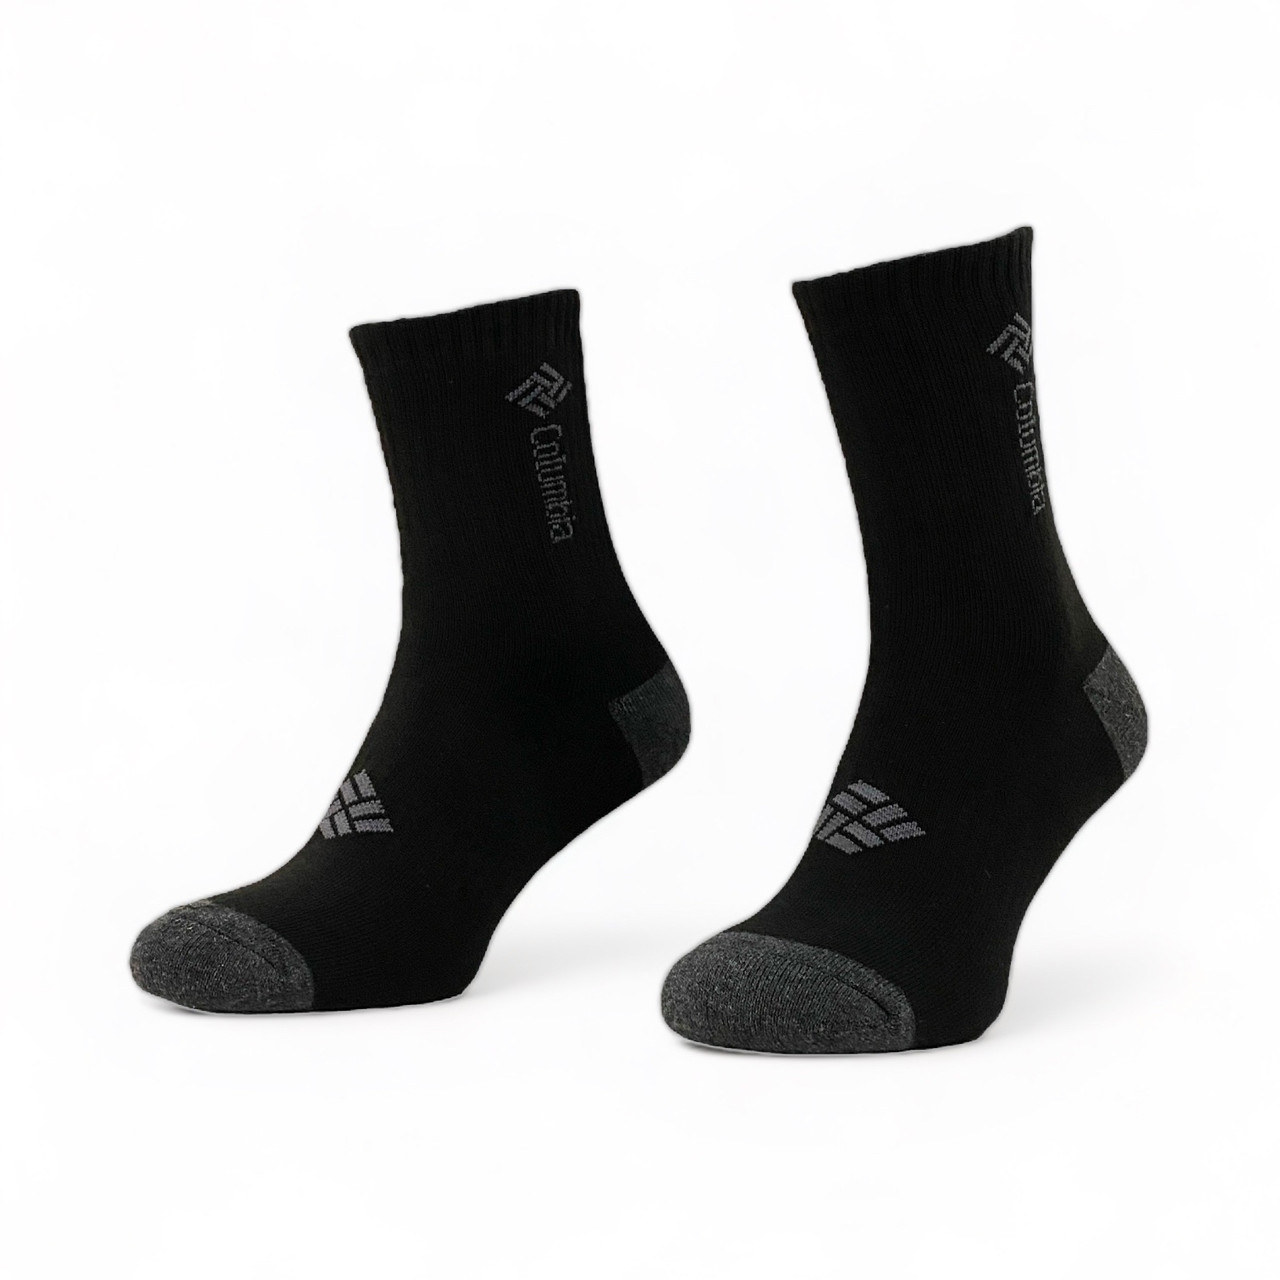 Чоловічі шкарпетки Columbia: комфорт і якість